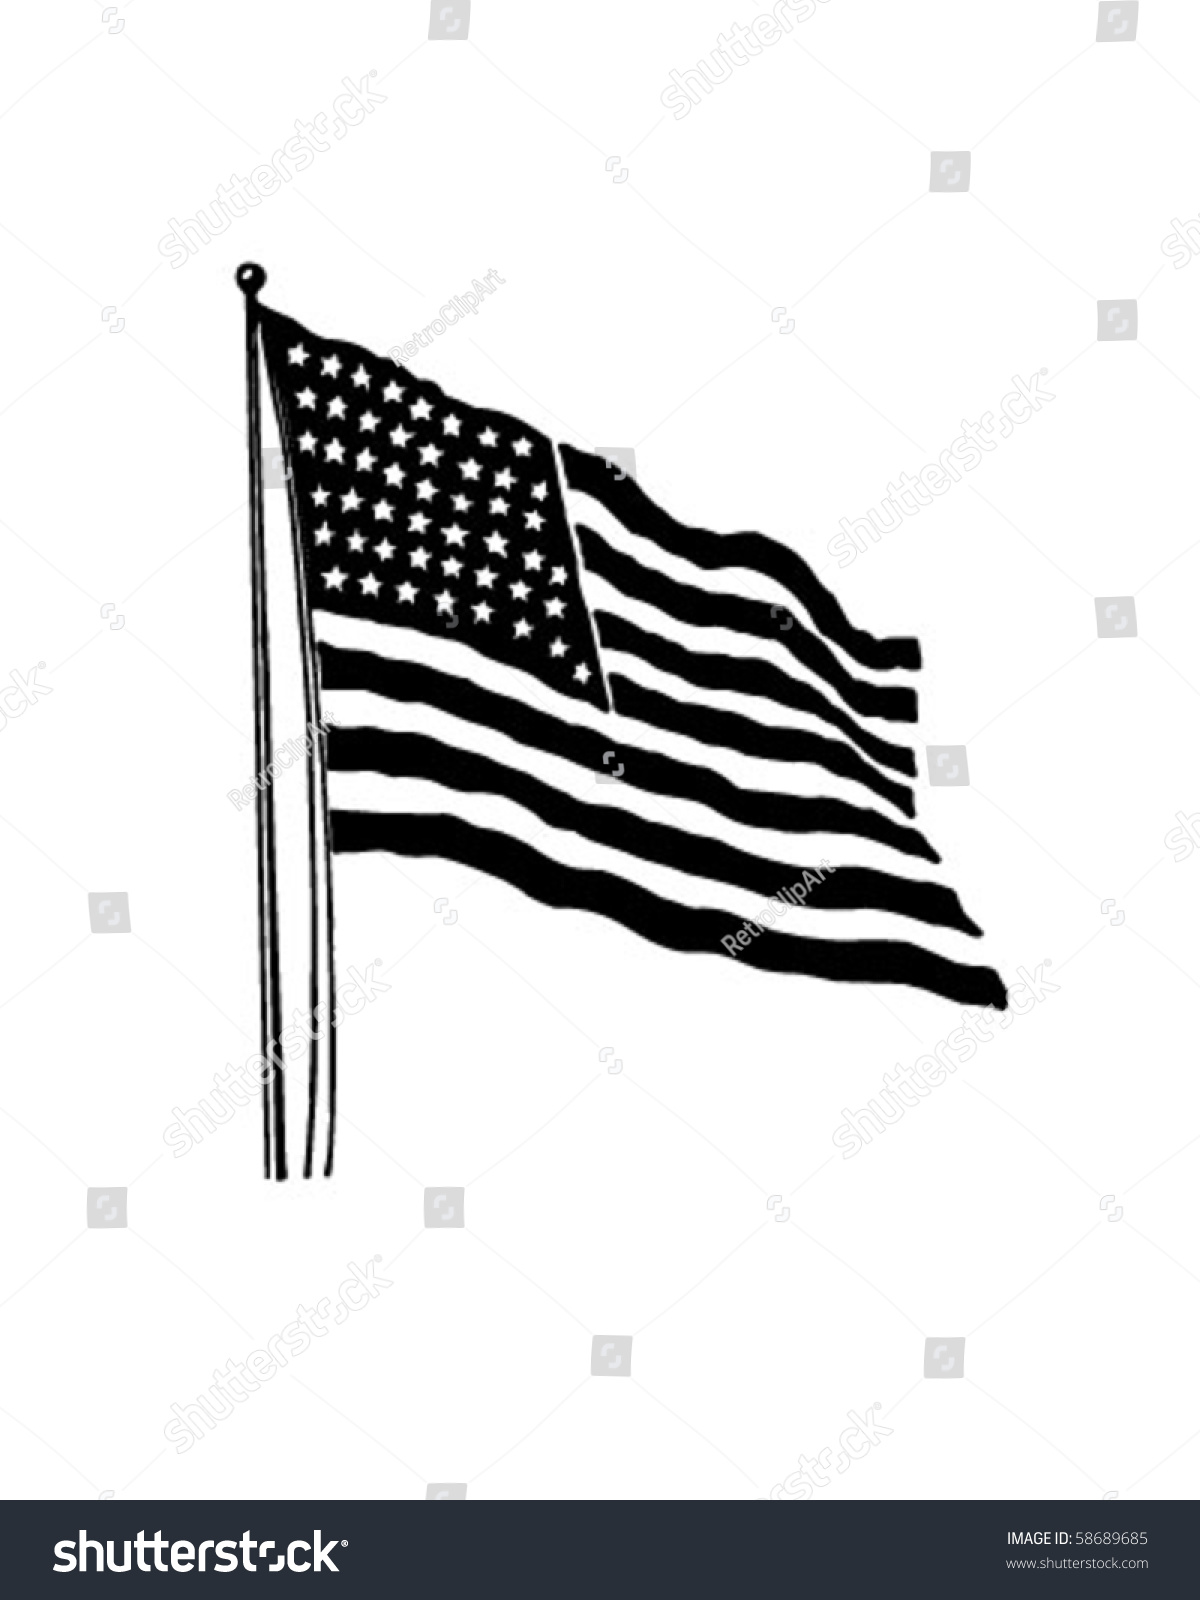 usa flag clipart black and white - photo #44